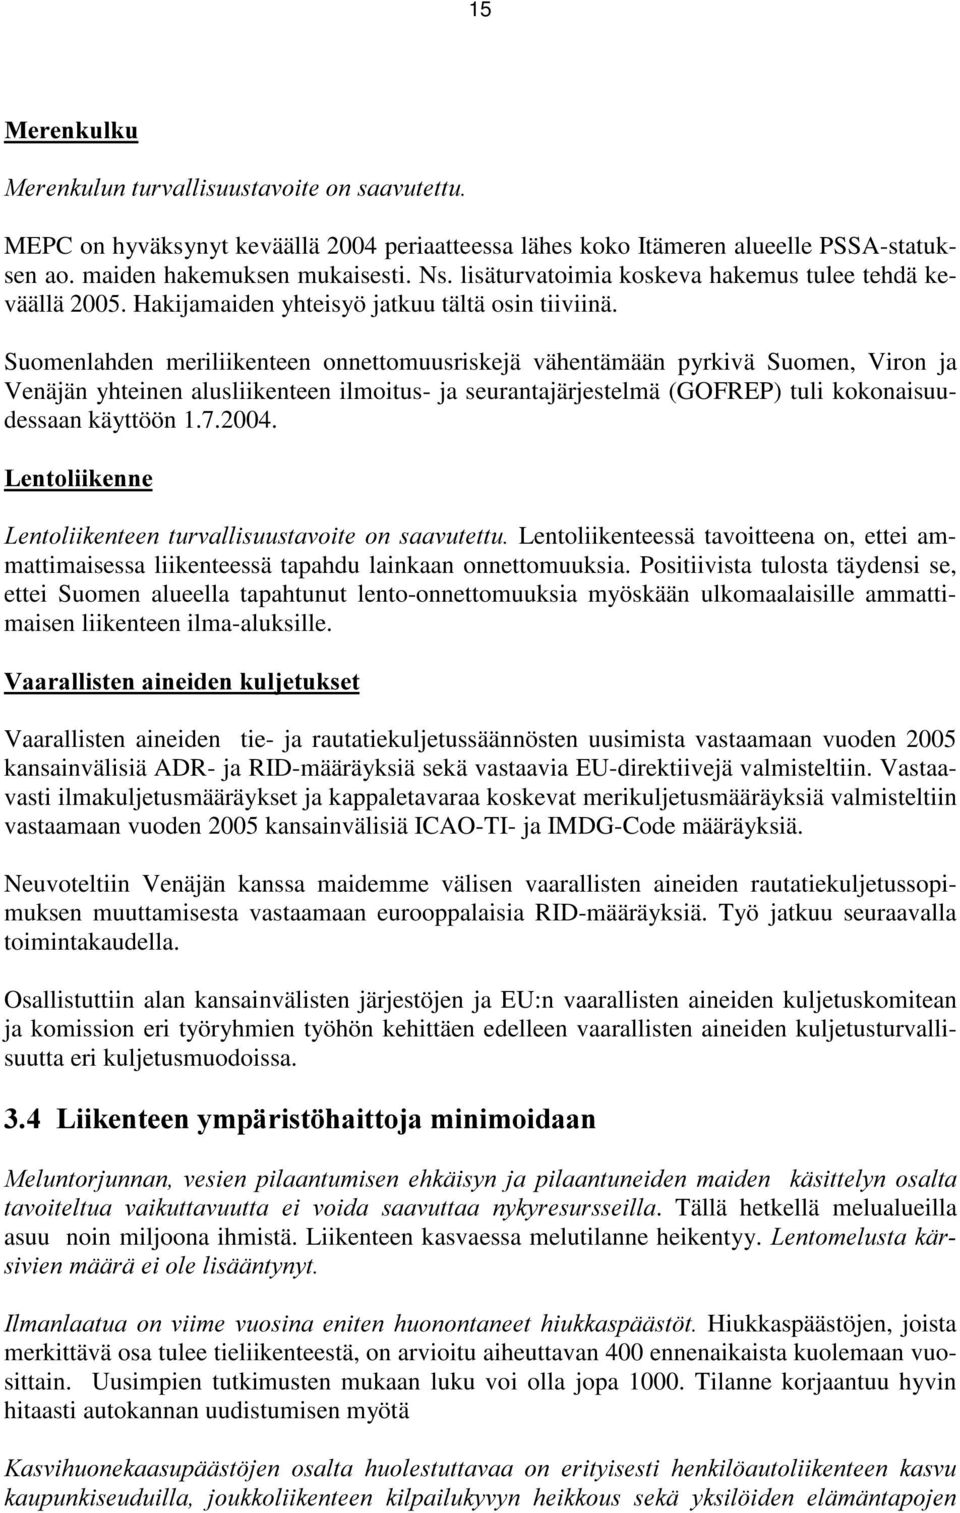 Suomenlahden meriliikenteen onnettomuusriskejä vähentämään pyrkivä Suomen, Viron ja Venäjän yhteinen alusliikenteen ilmoitus- ja seurantajärjestelmä (GOFREP) tuli kokonaisuudessaan käyttöön 1.7.2004.